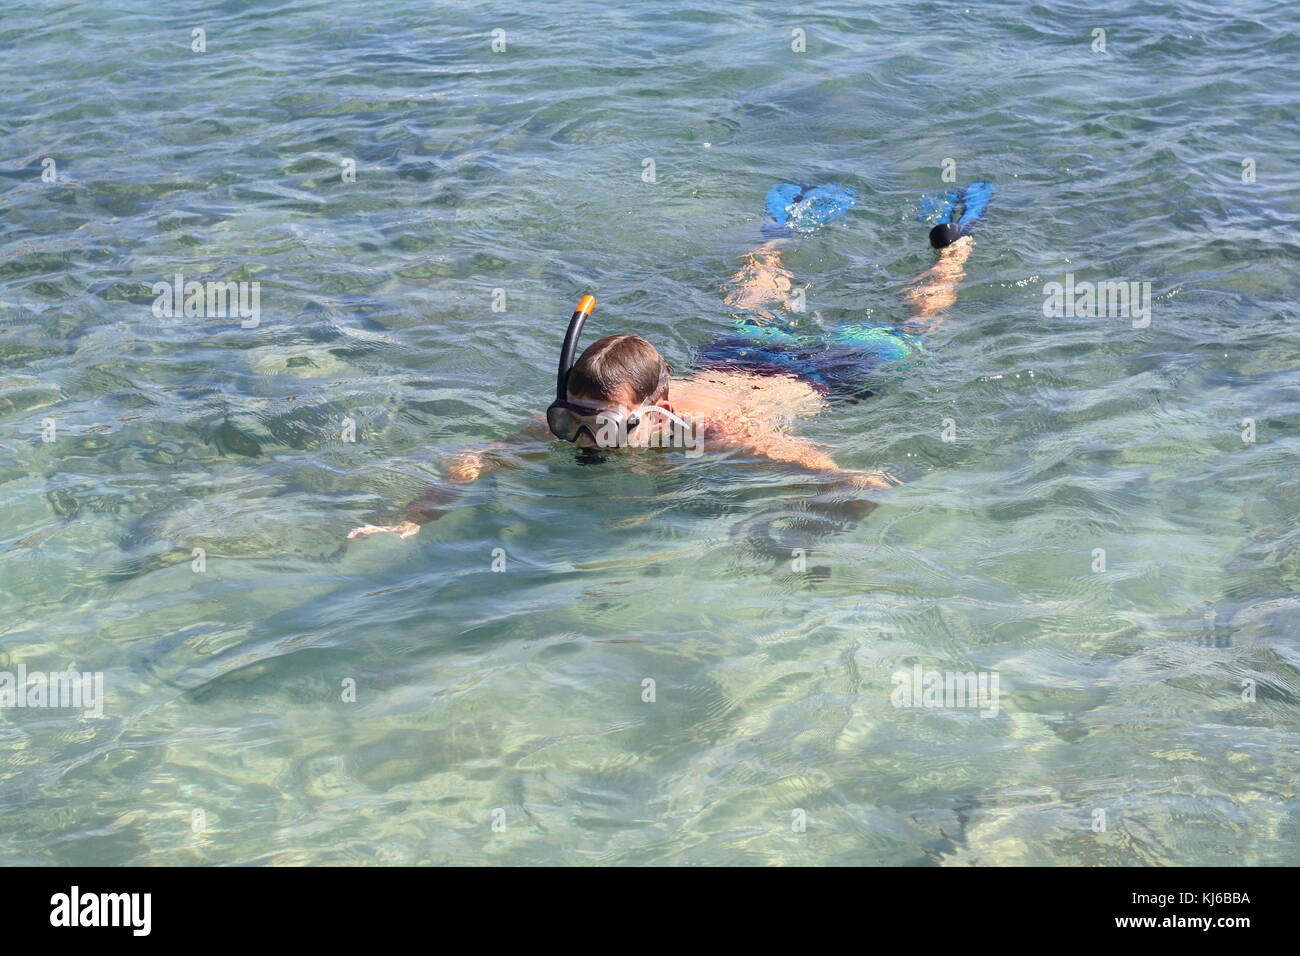 Un snorkeling immersioni in spiaggia acqua di mare, per trovare le conchiglie e osservare pesci. Foto Stock